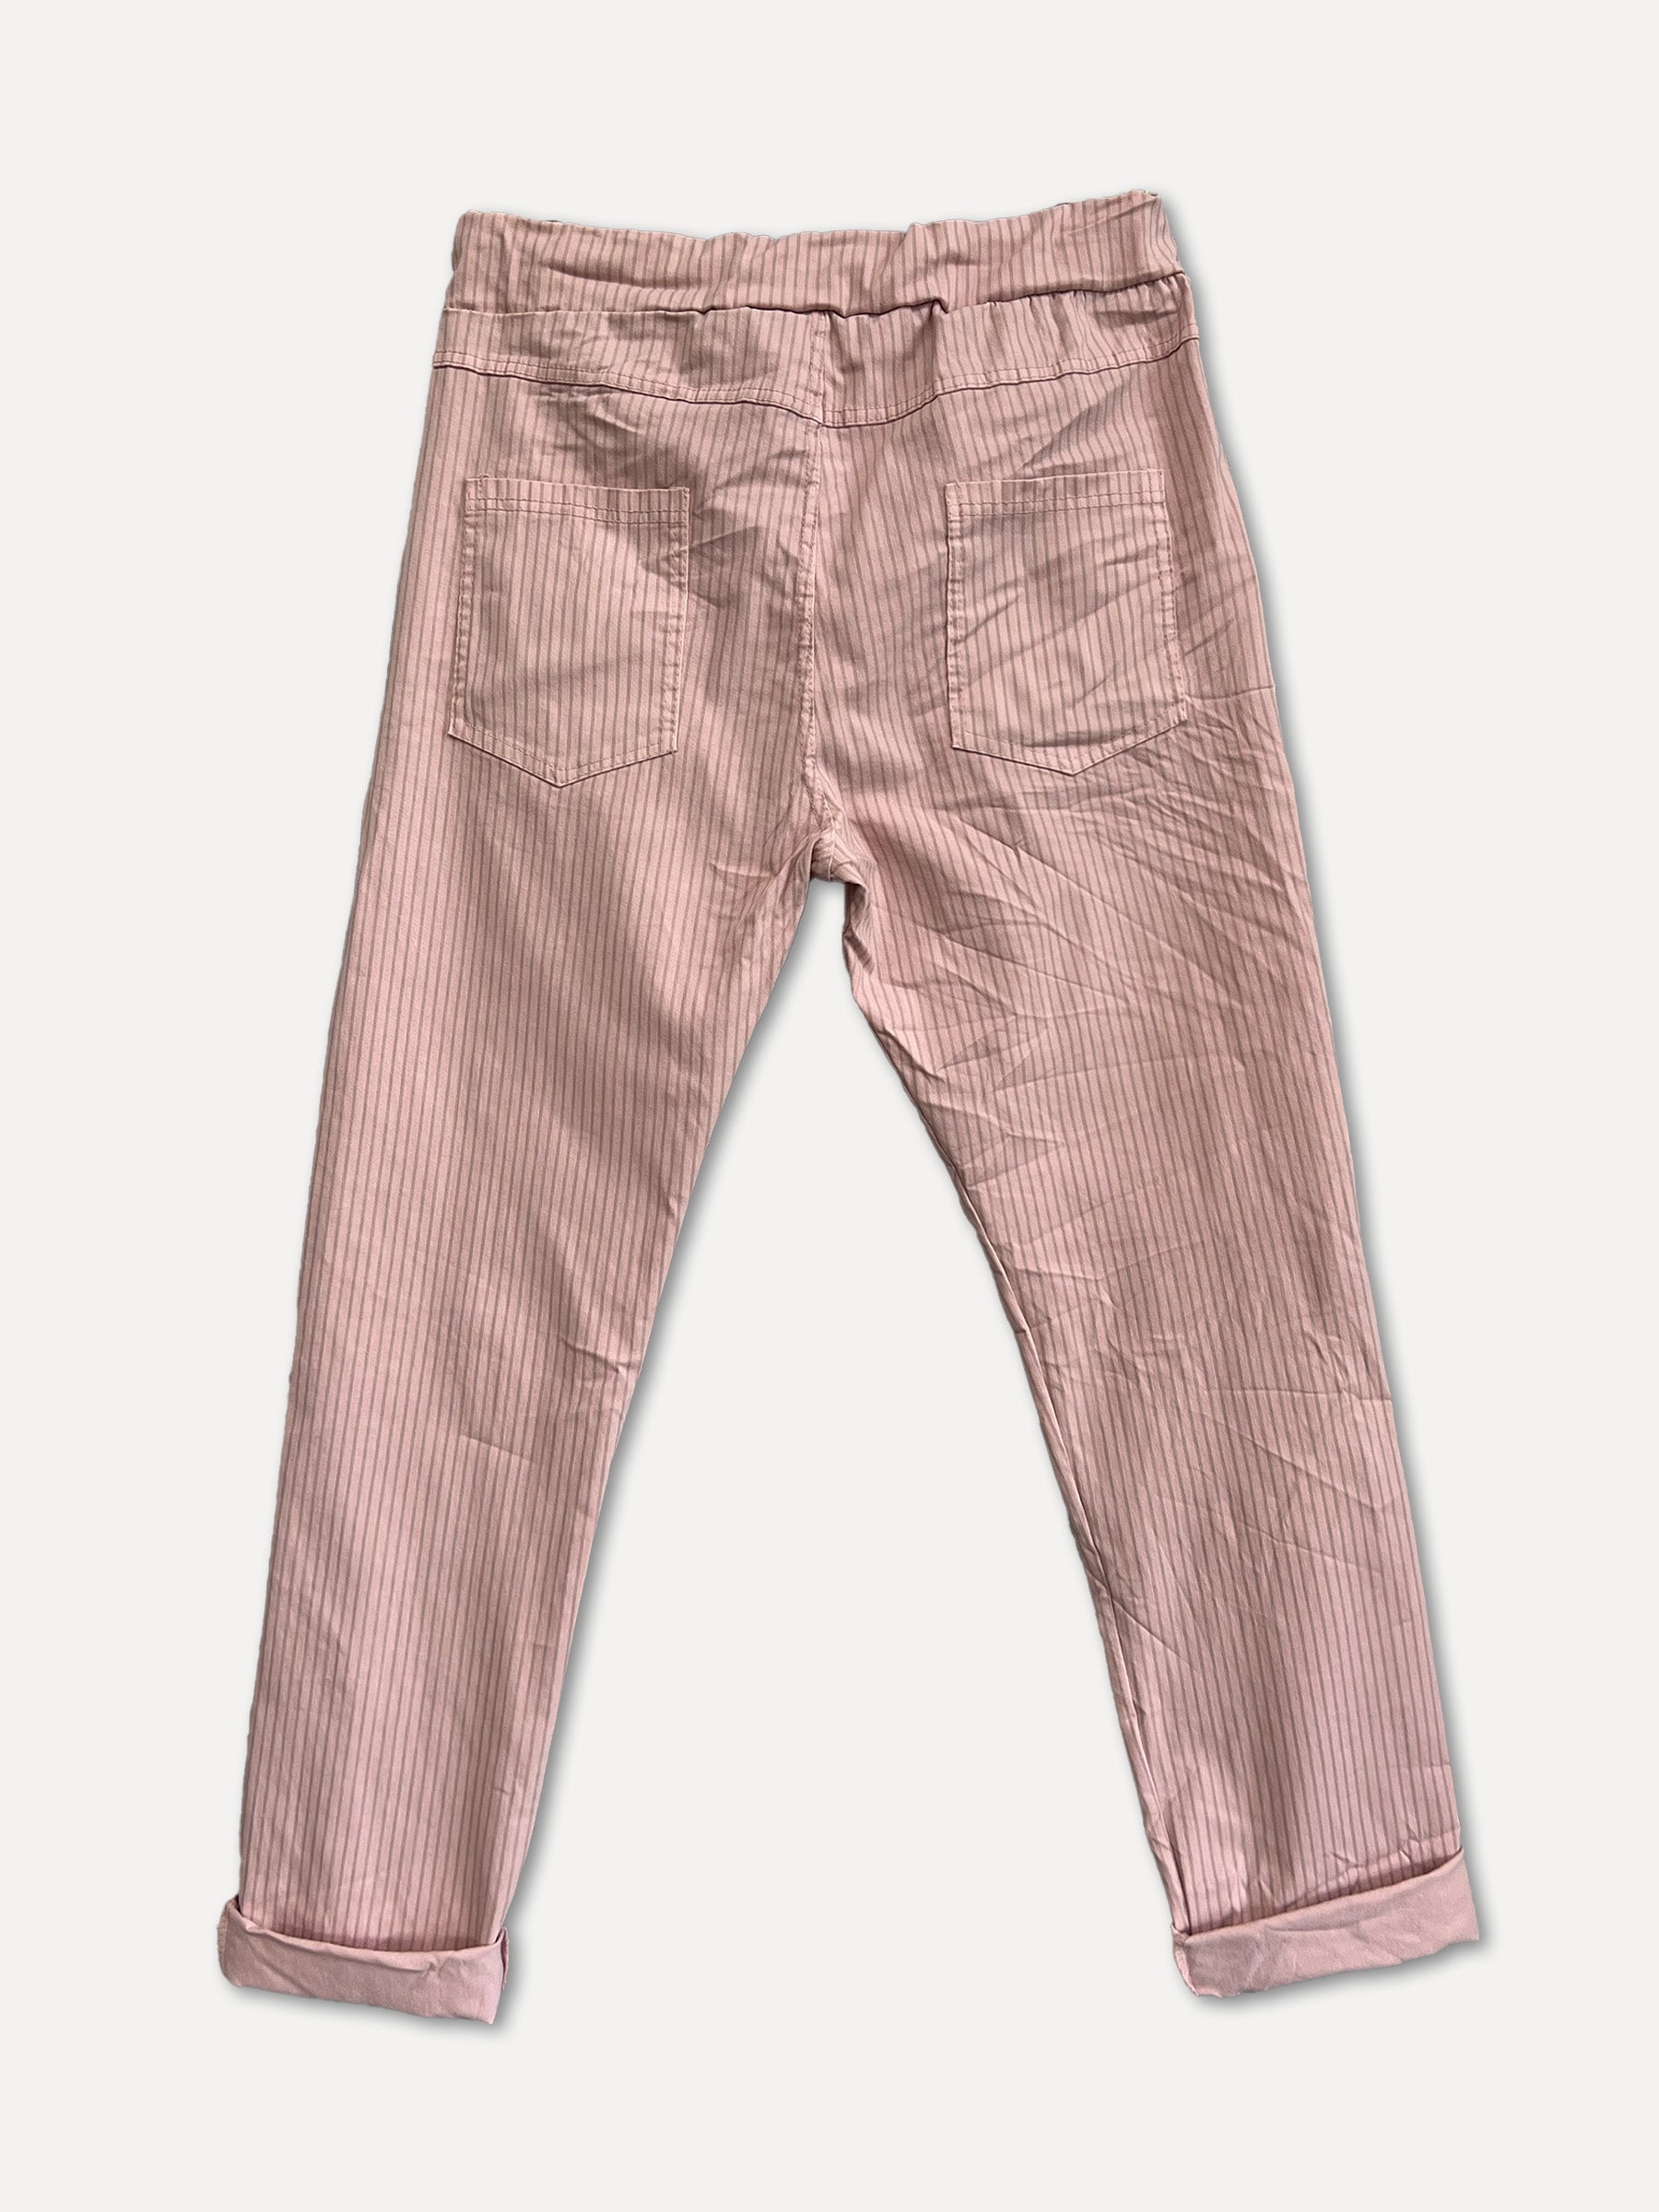 STRIPE BOX Pants, Pink